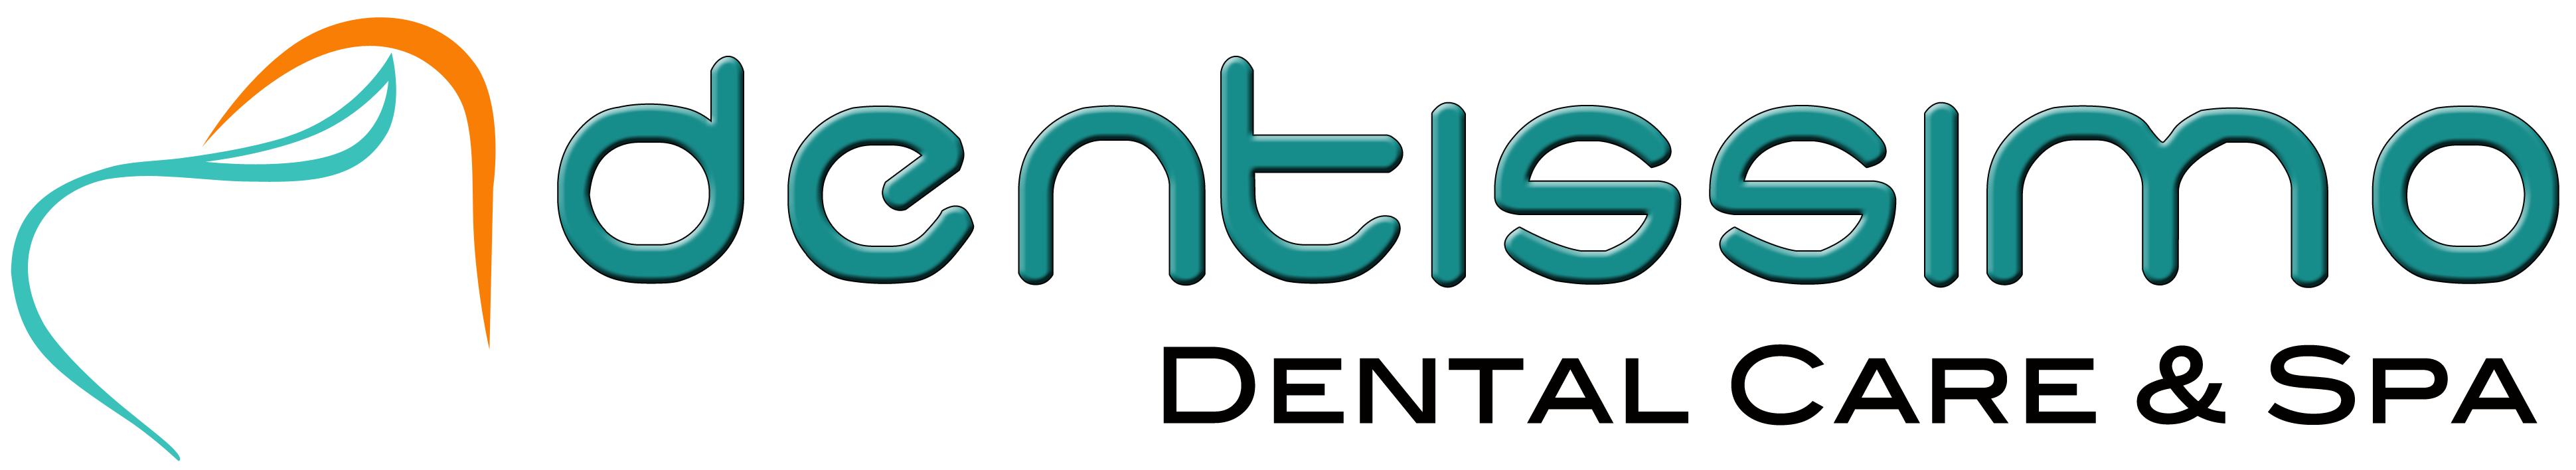 Dentissimo Dental Care & Spa|Diagnostic centre|Medical Services